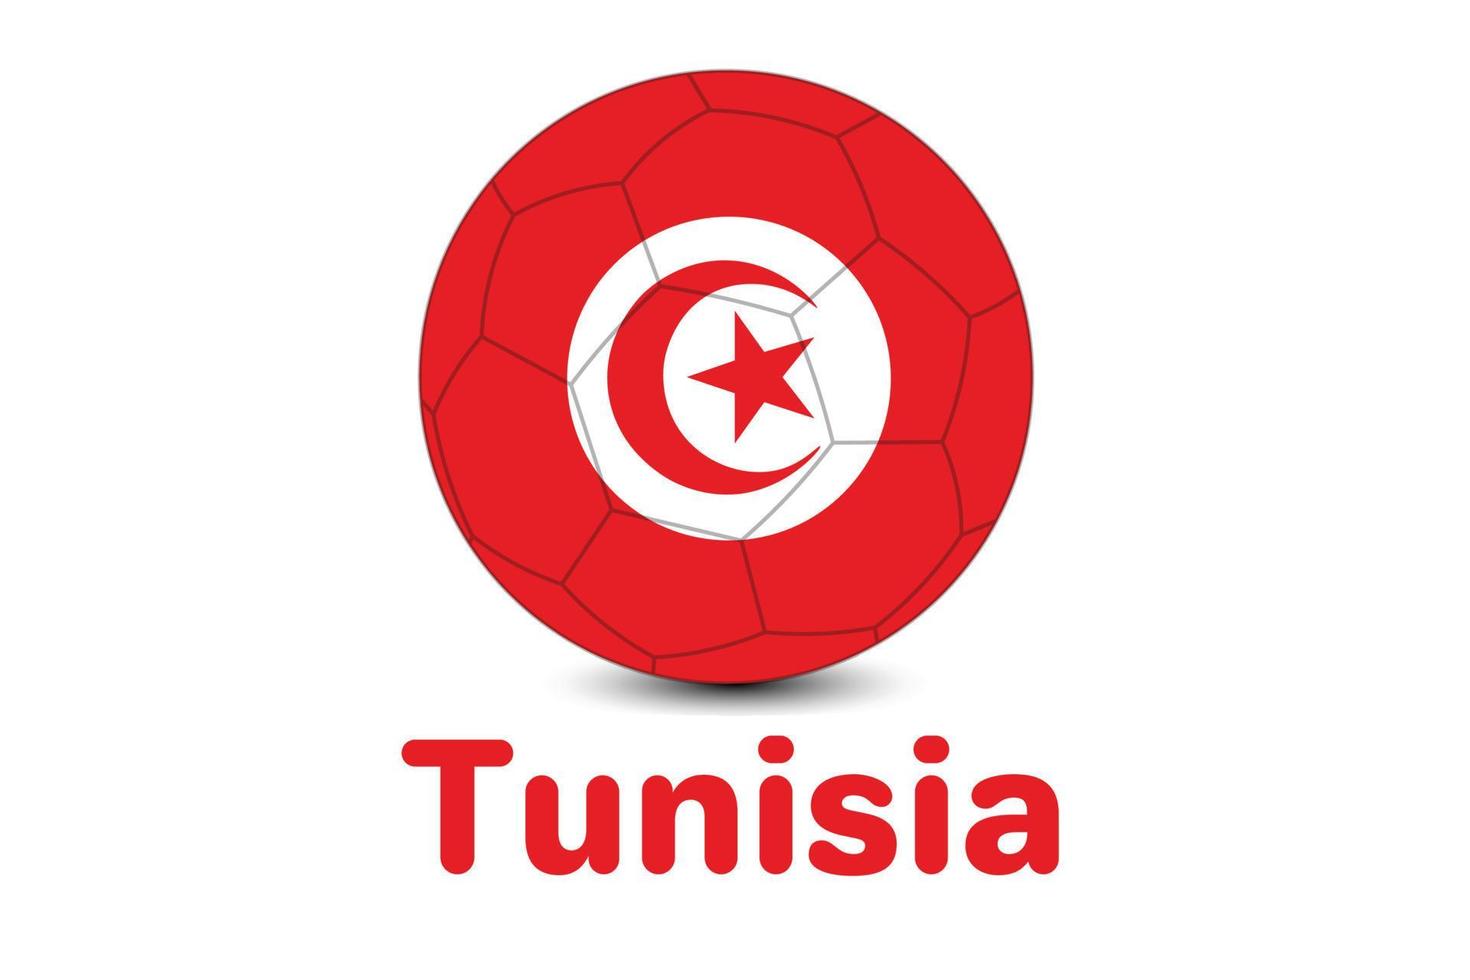 FIFA football world cup Tunisia flag. Qatar world cup 2022. tunisia flag illustration. vector